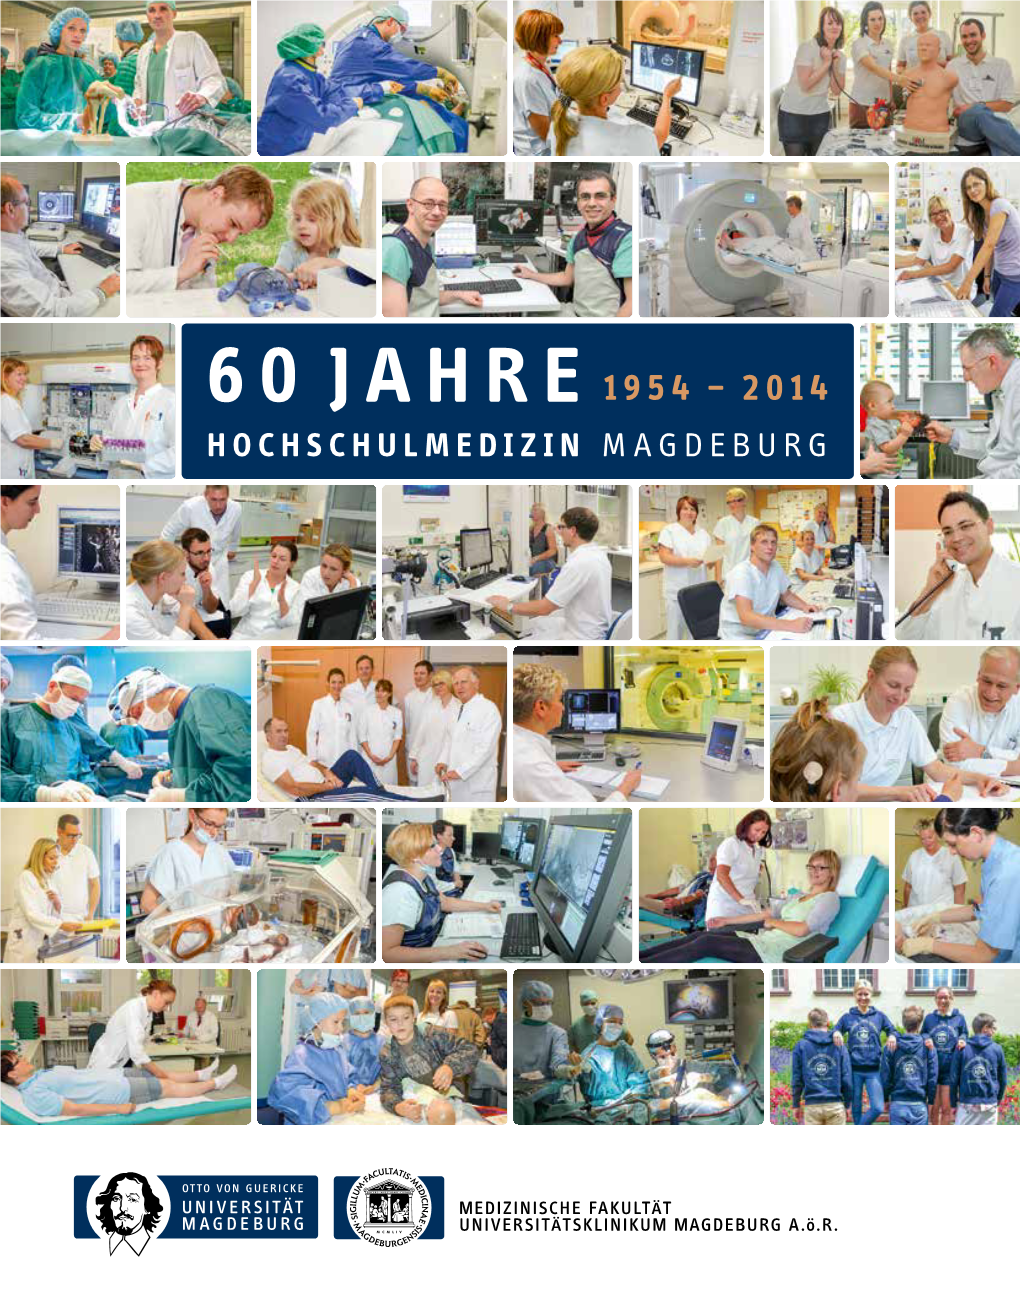 60 Jahre Hochschulmedizin in Magdeburg